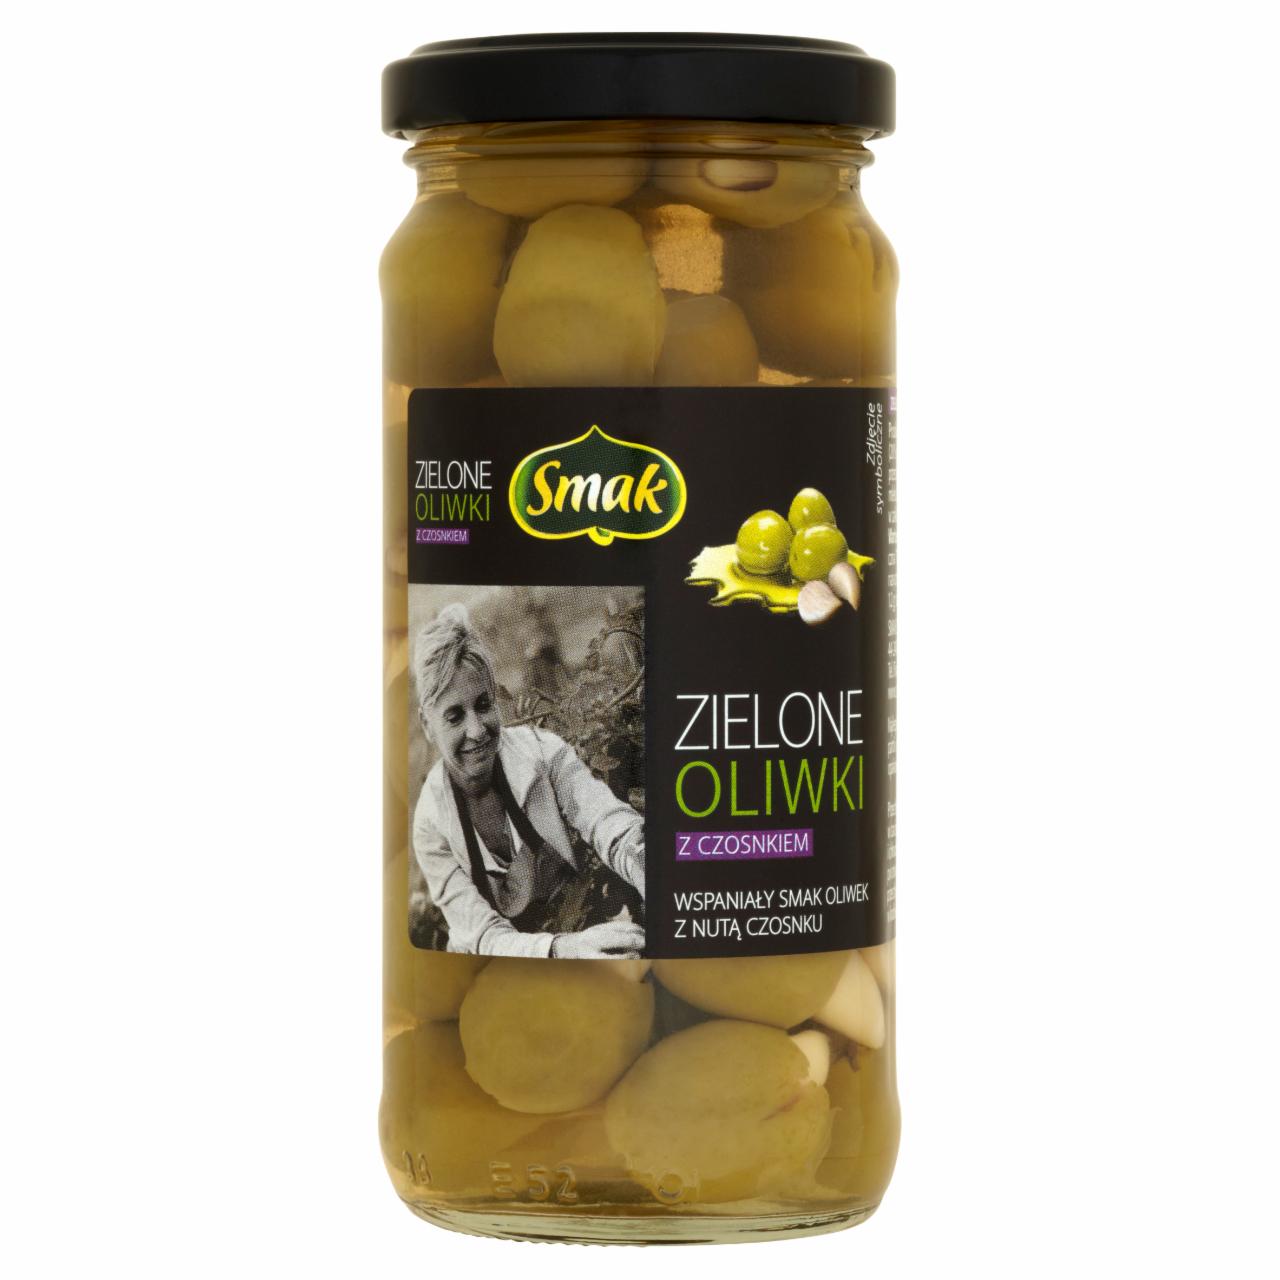 Zdjęcia - Zielone oliwki z czosnkiem Smak